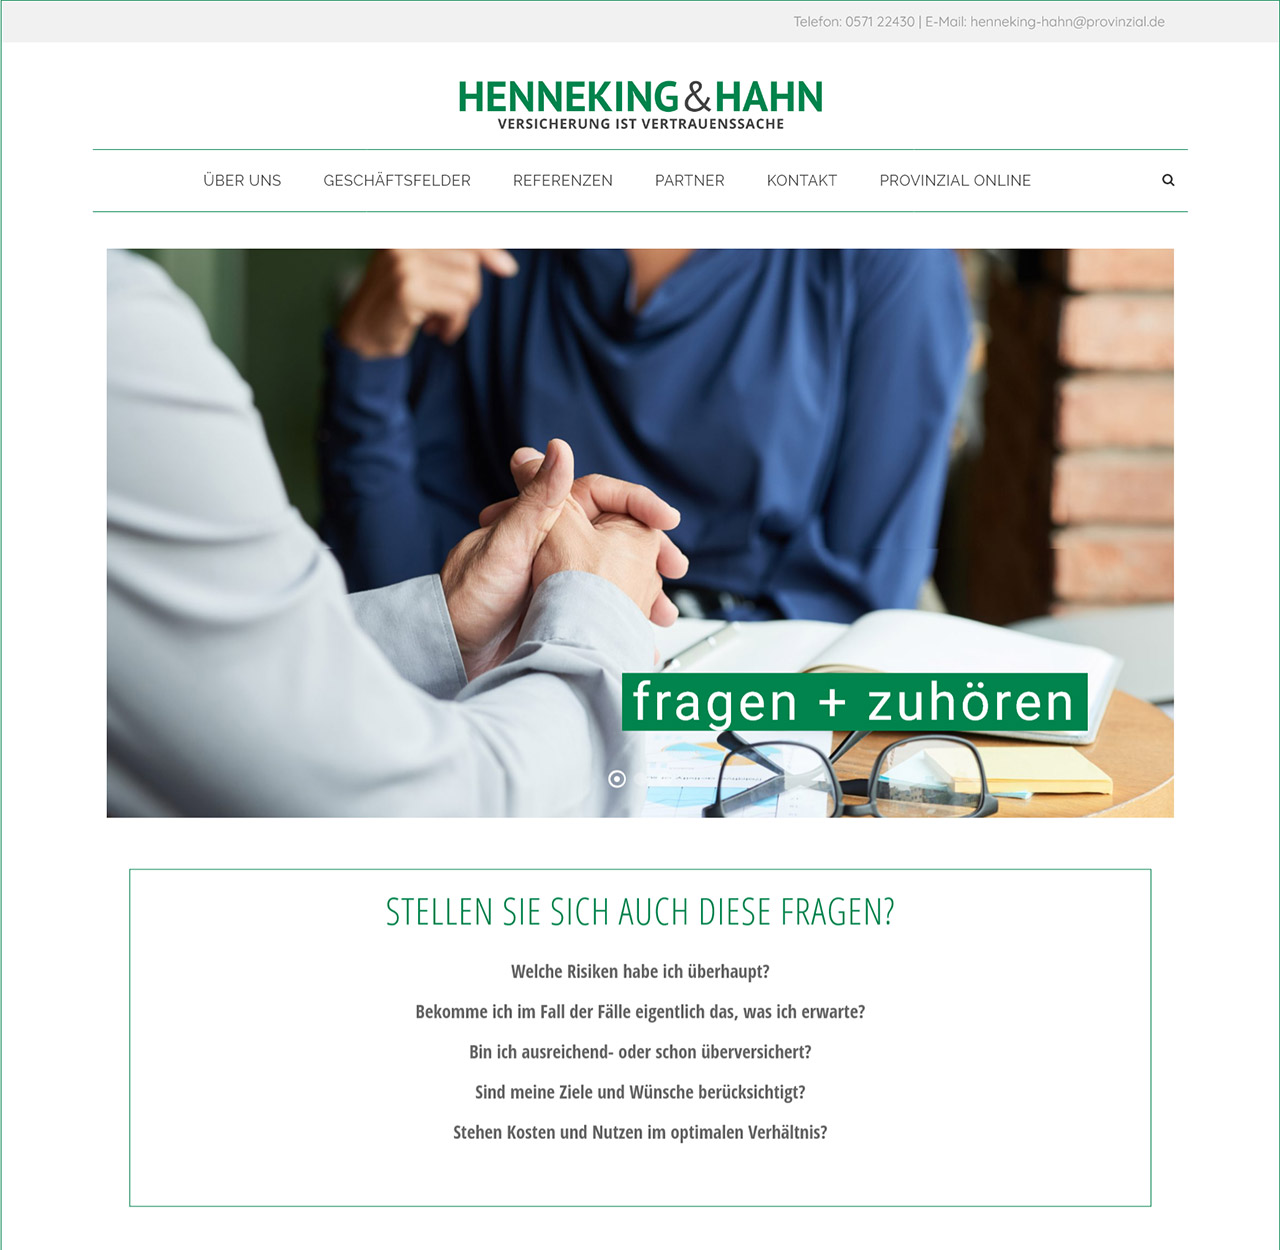 Henneking & Hahn OHG in Minden: Versicherung ist Vertrauenssache